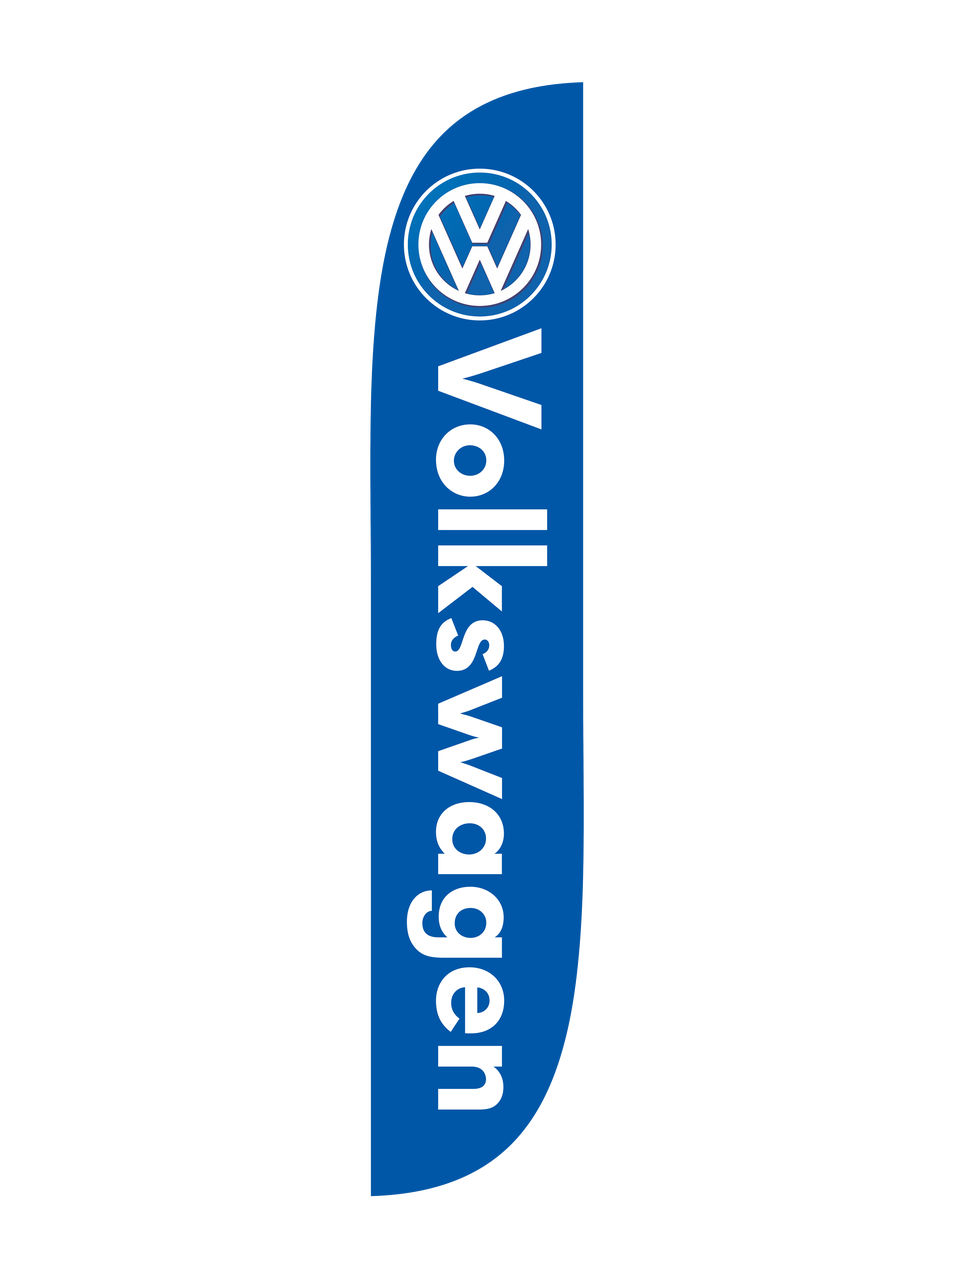 12ft Volkswagen Feather Flag